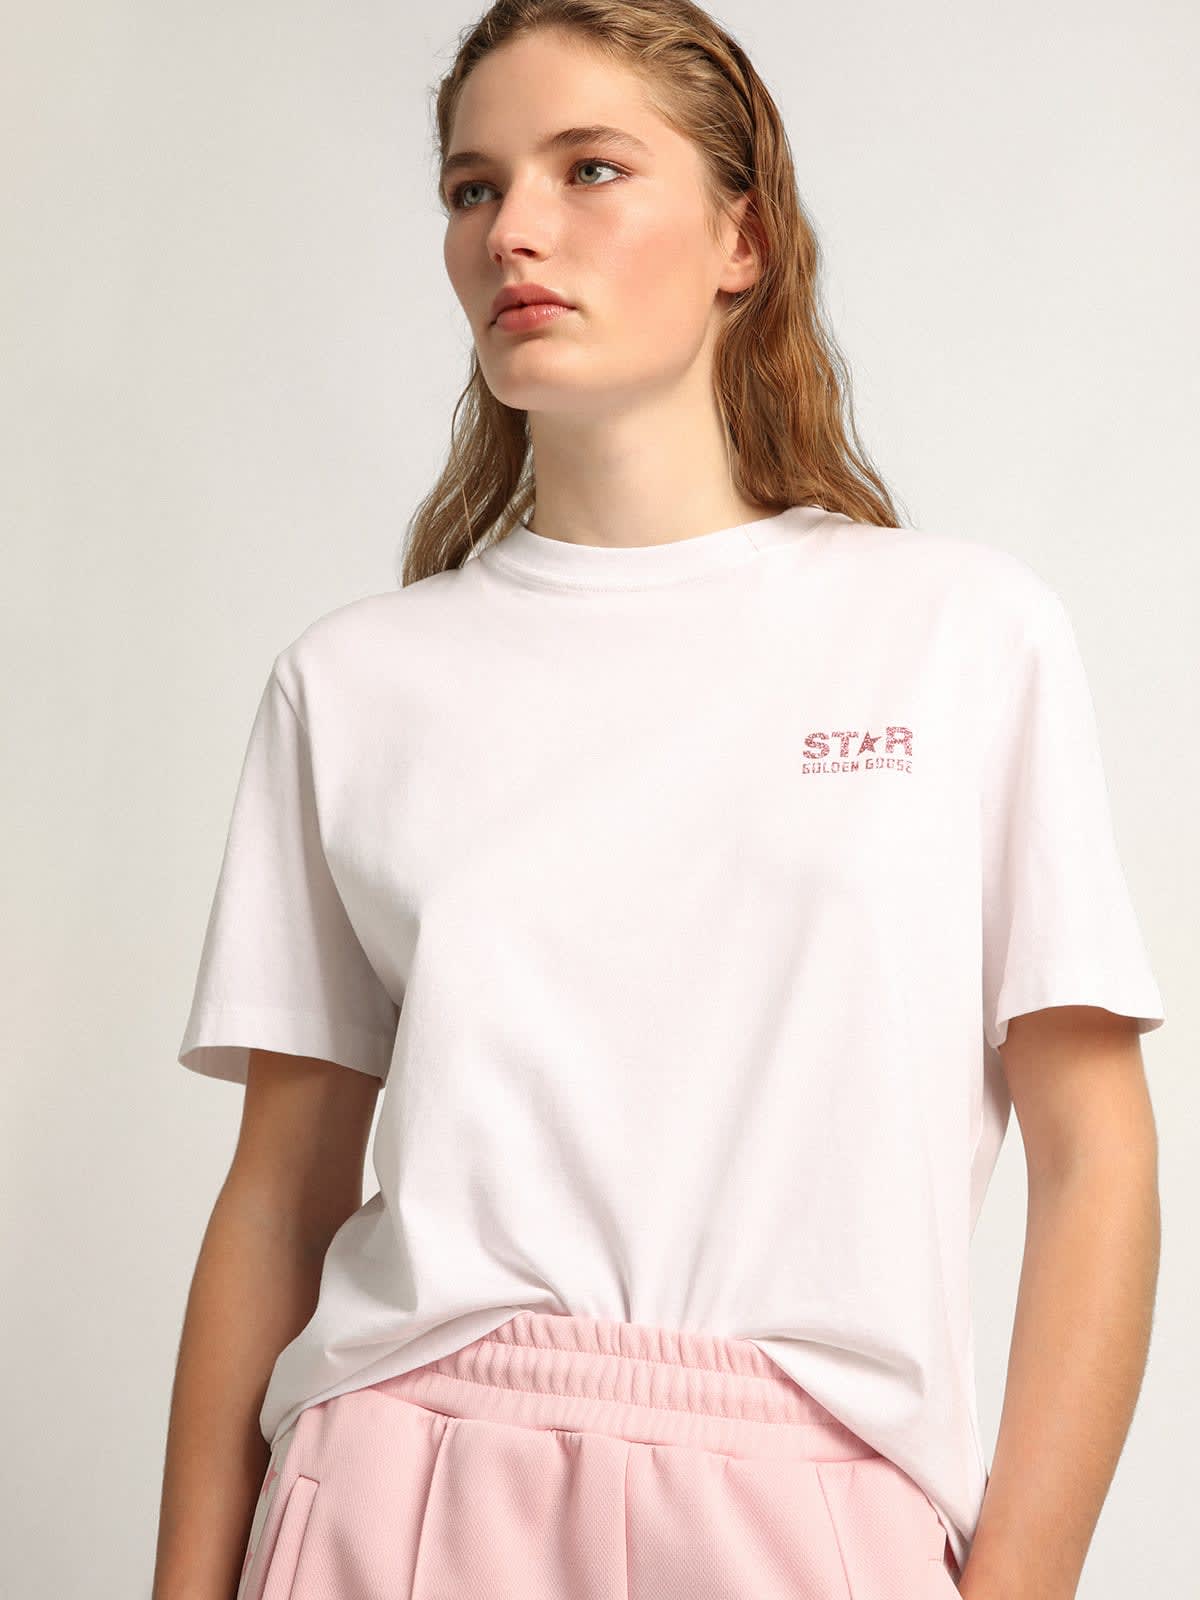 Golden Goose - T-shirt femme blanc avec logo et étoile à paillettes roses in 